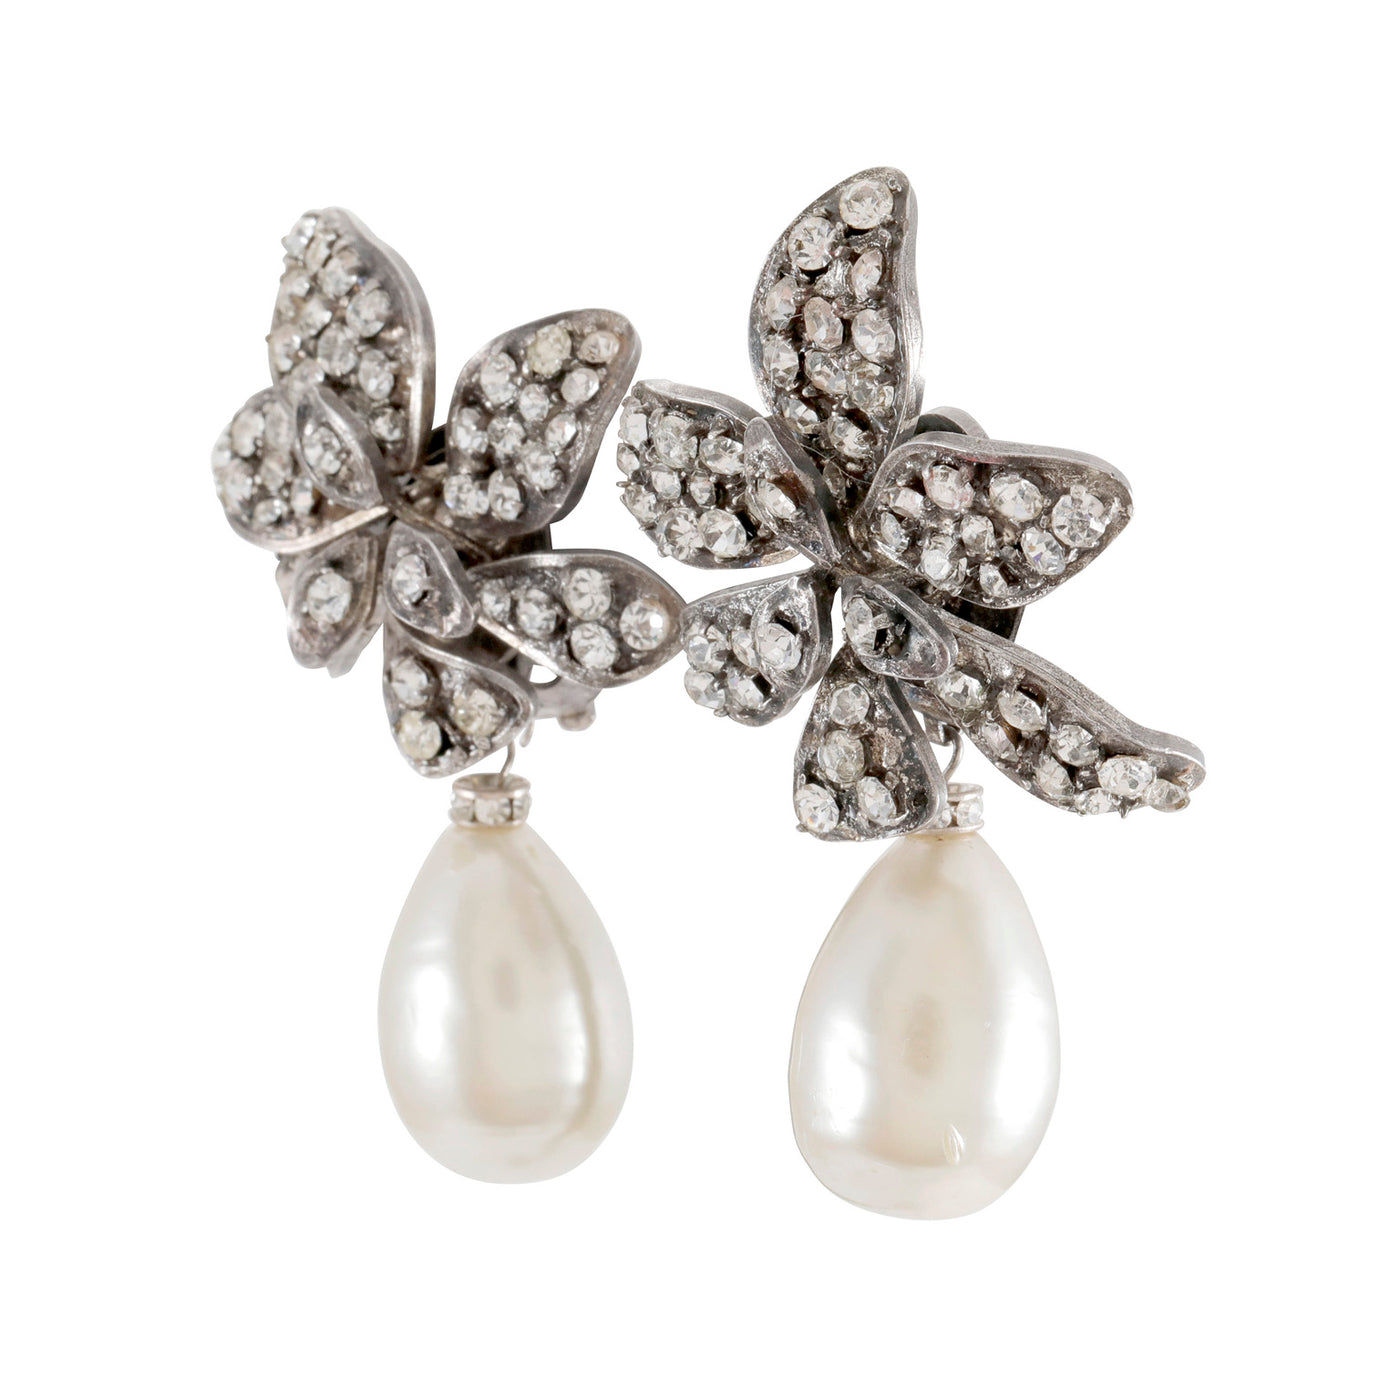 Chanel Silver Crystal Flower Earrings w/ Large Pearl Drop